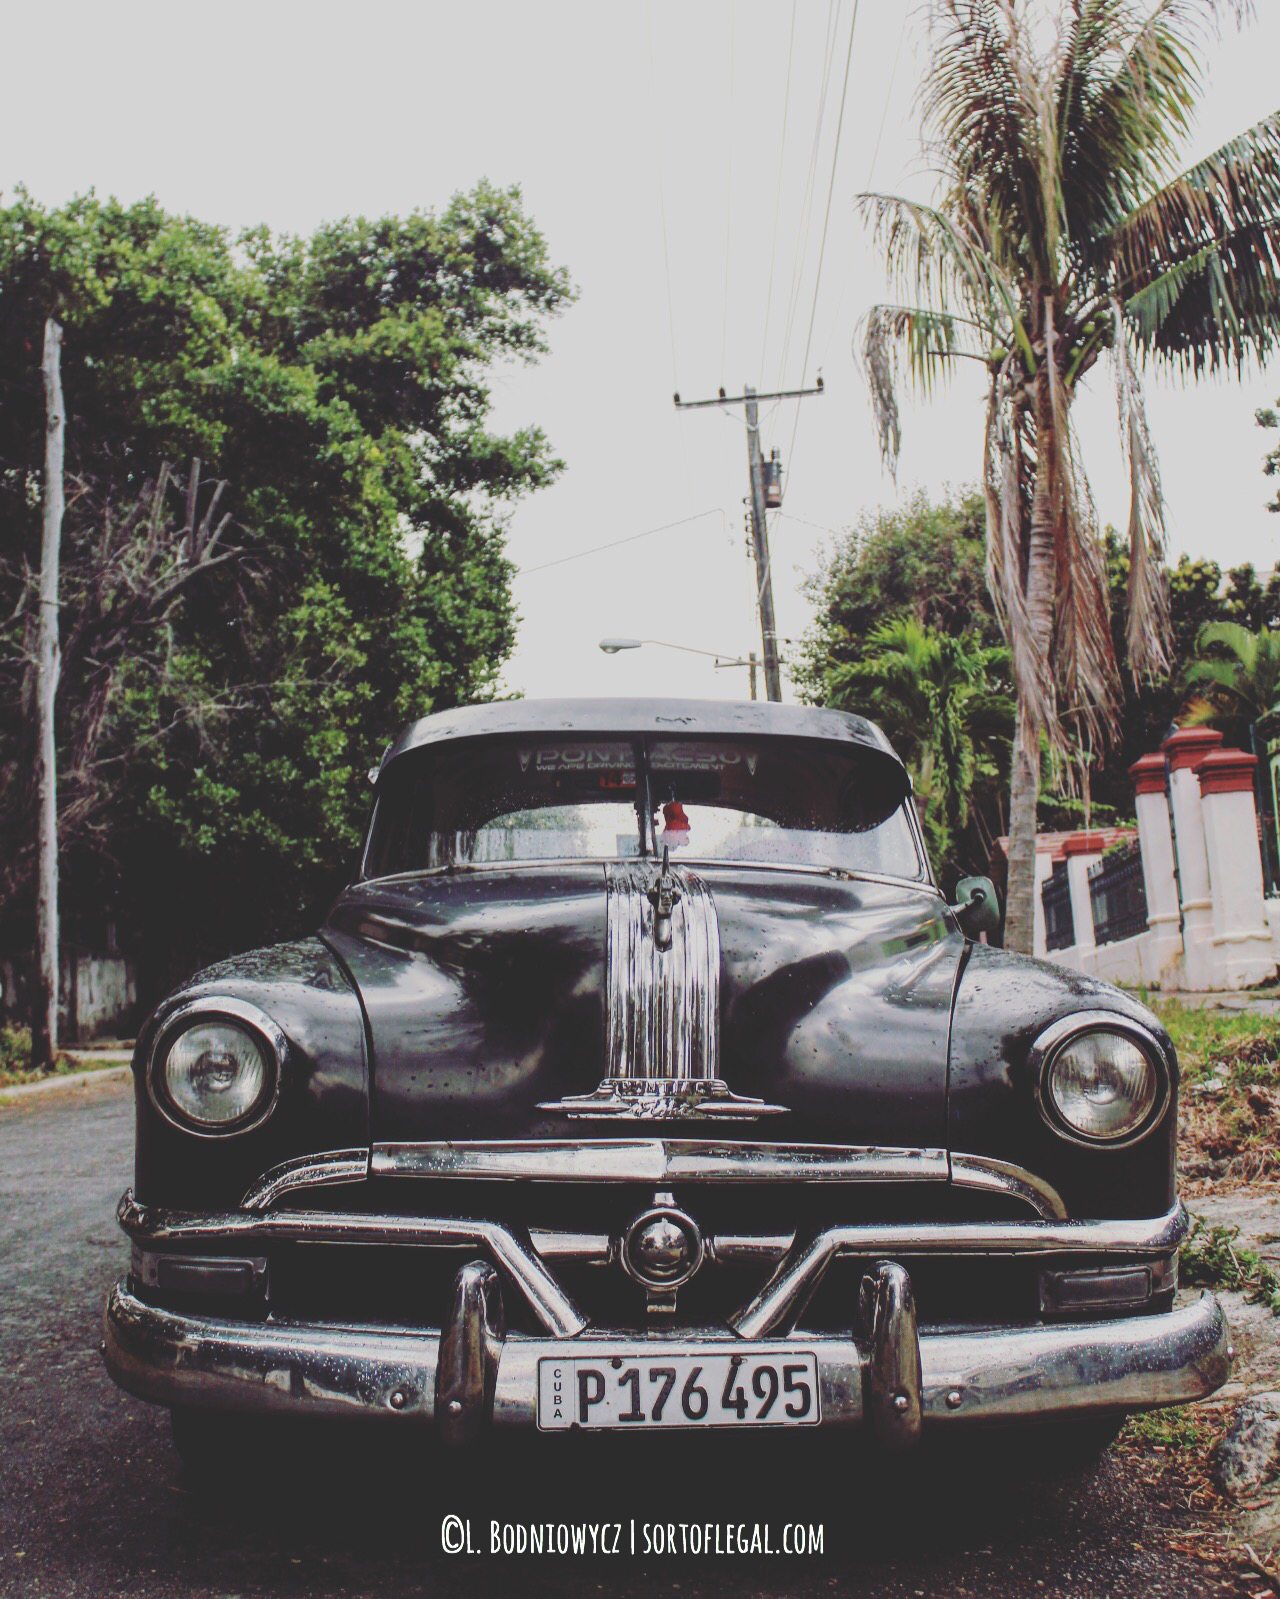 Black Car Vedado Area, Havana, Cuba March 2017